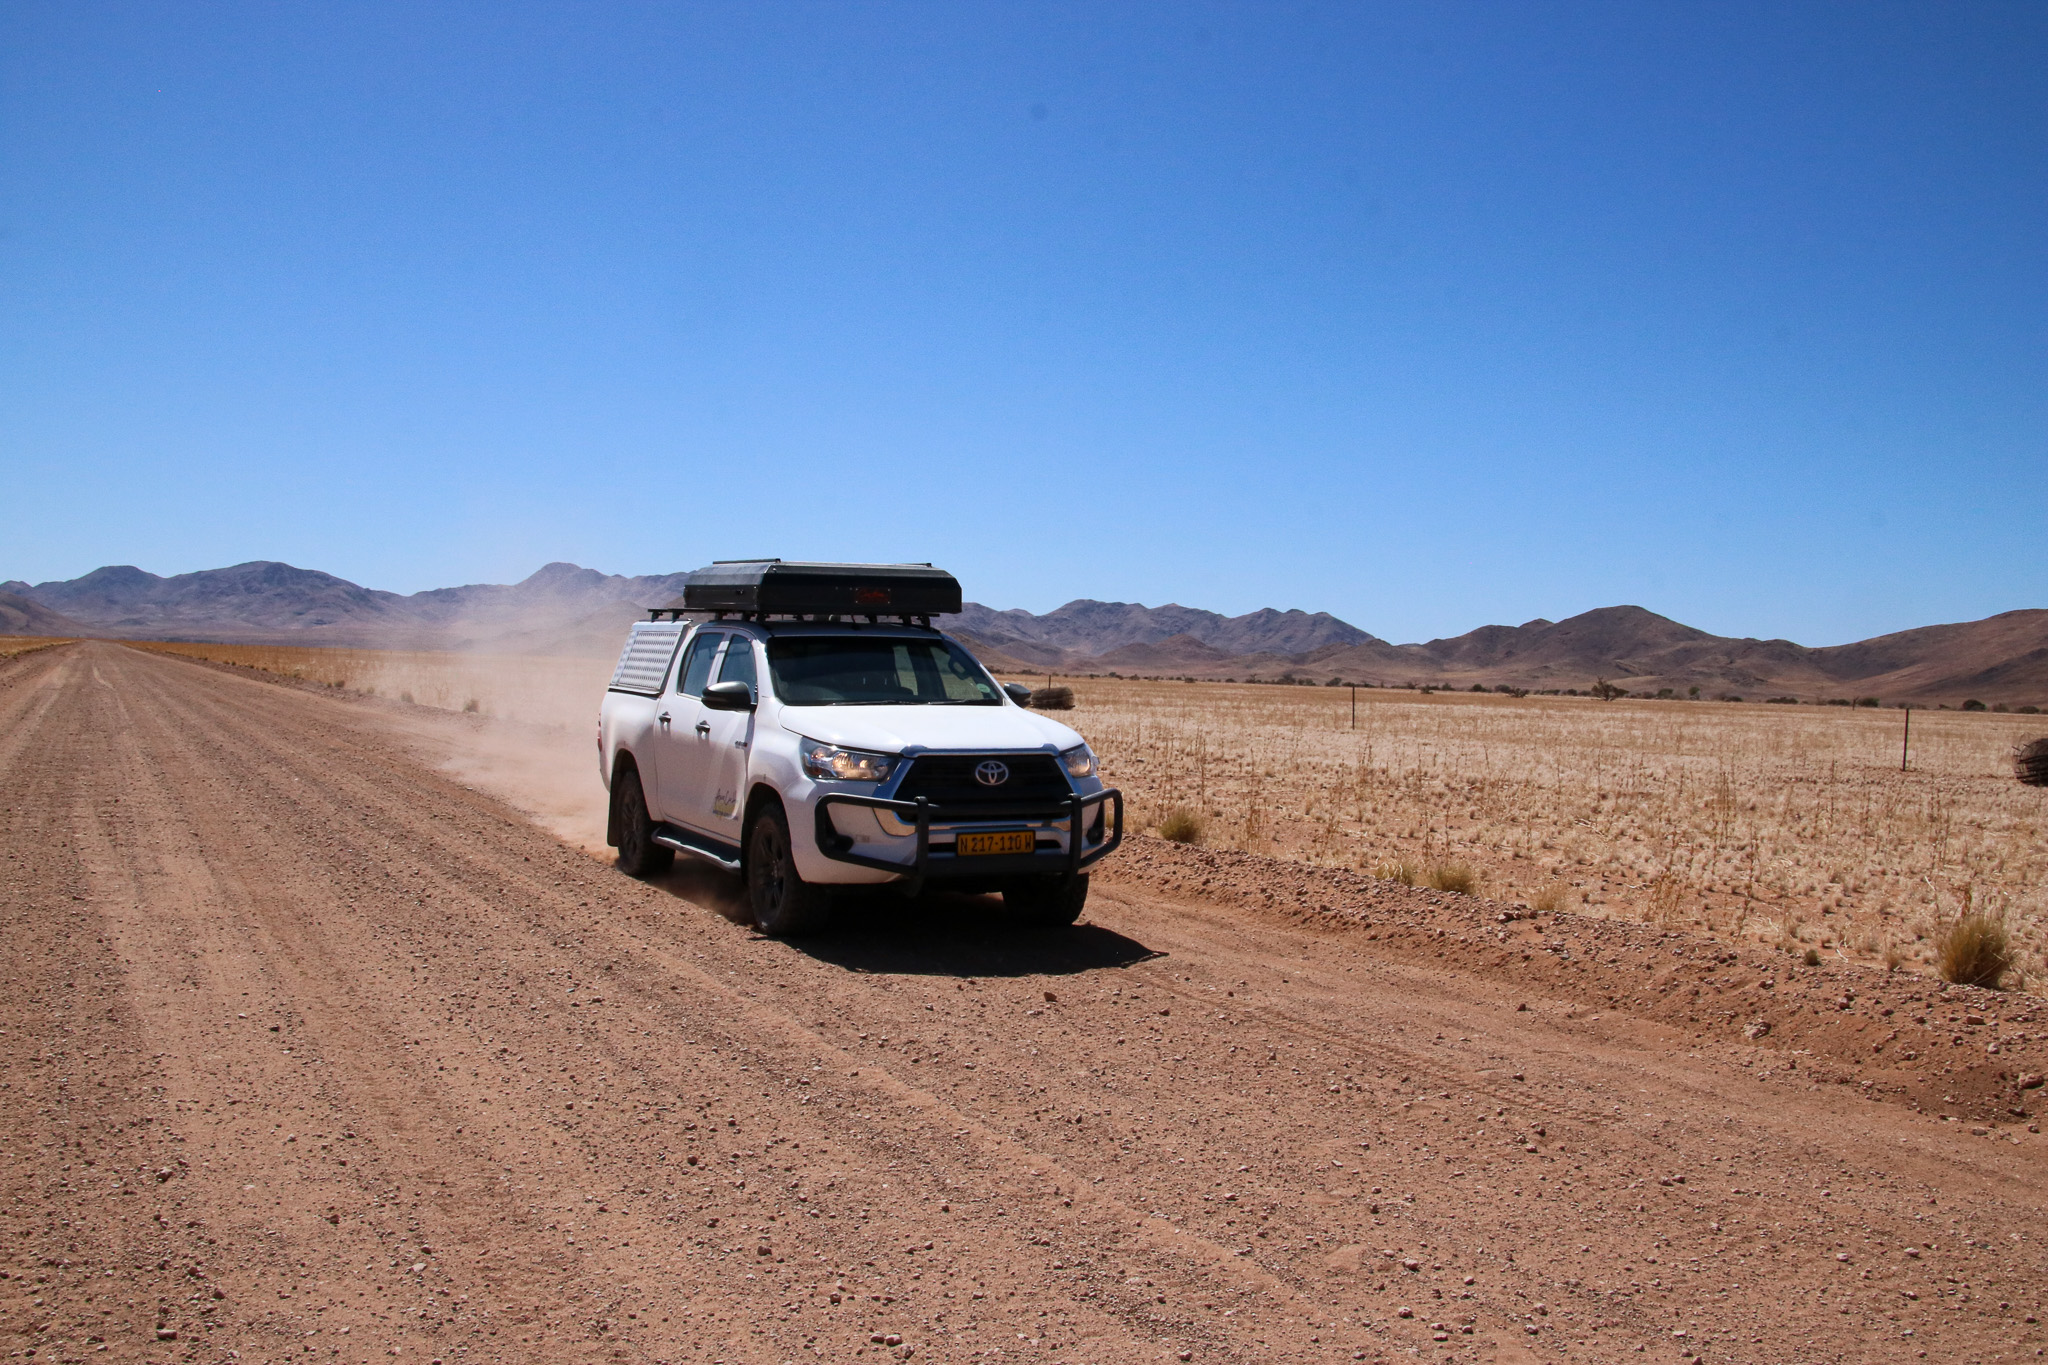 Route Namibia Roadtrip